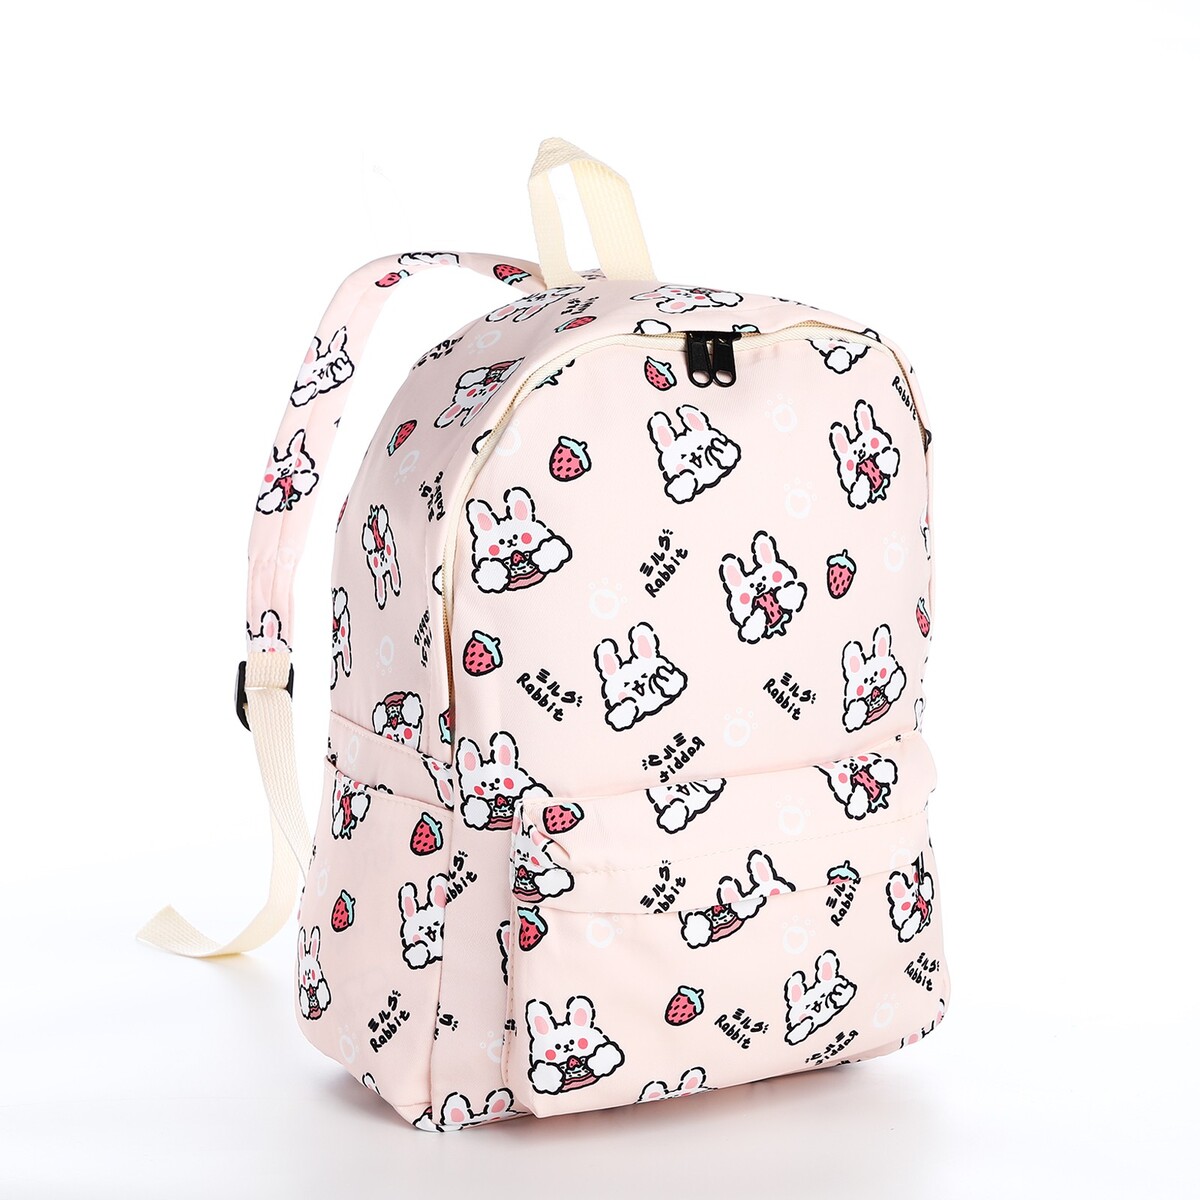 Рюкзак школьный из текстиля на молнии, 3 кармана, цвет бежевый/розовый рюкзак школьный из текстиля на молнии 4 кармана кошелек бежевый